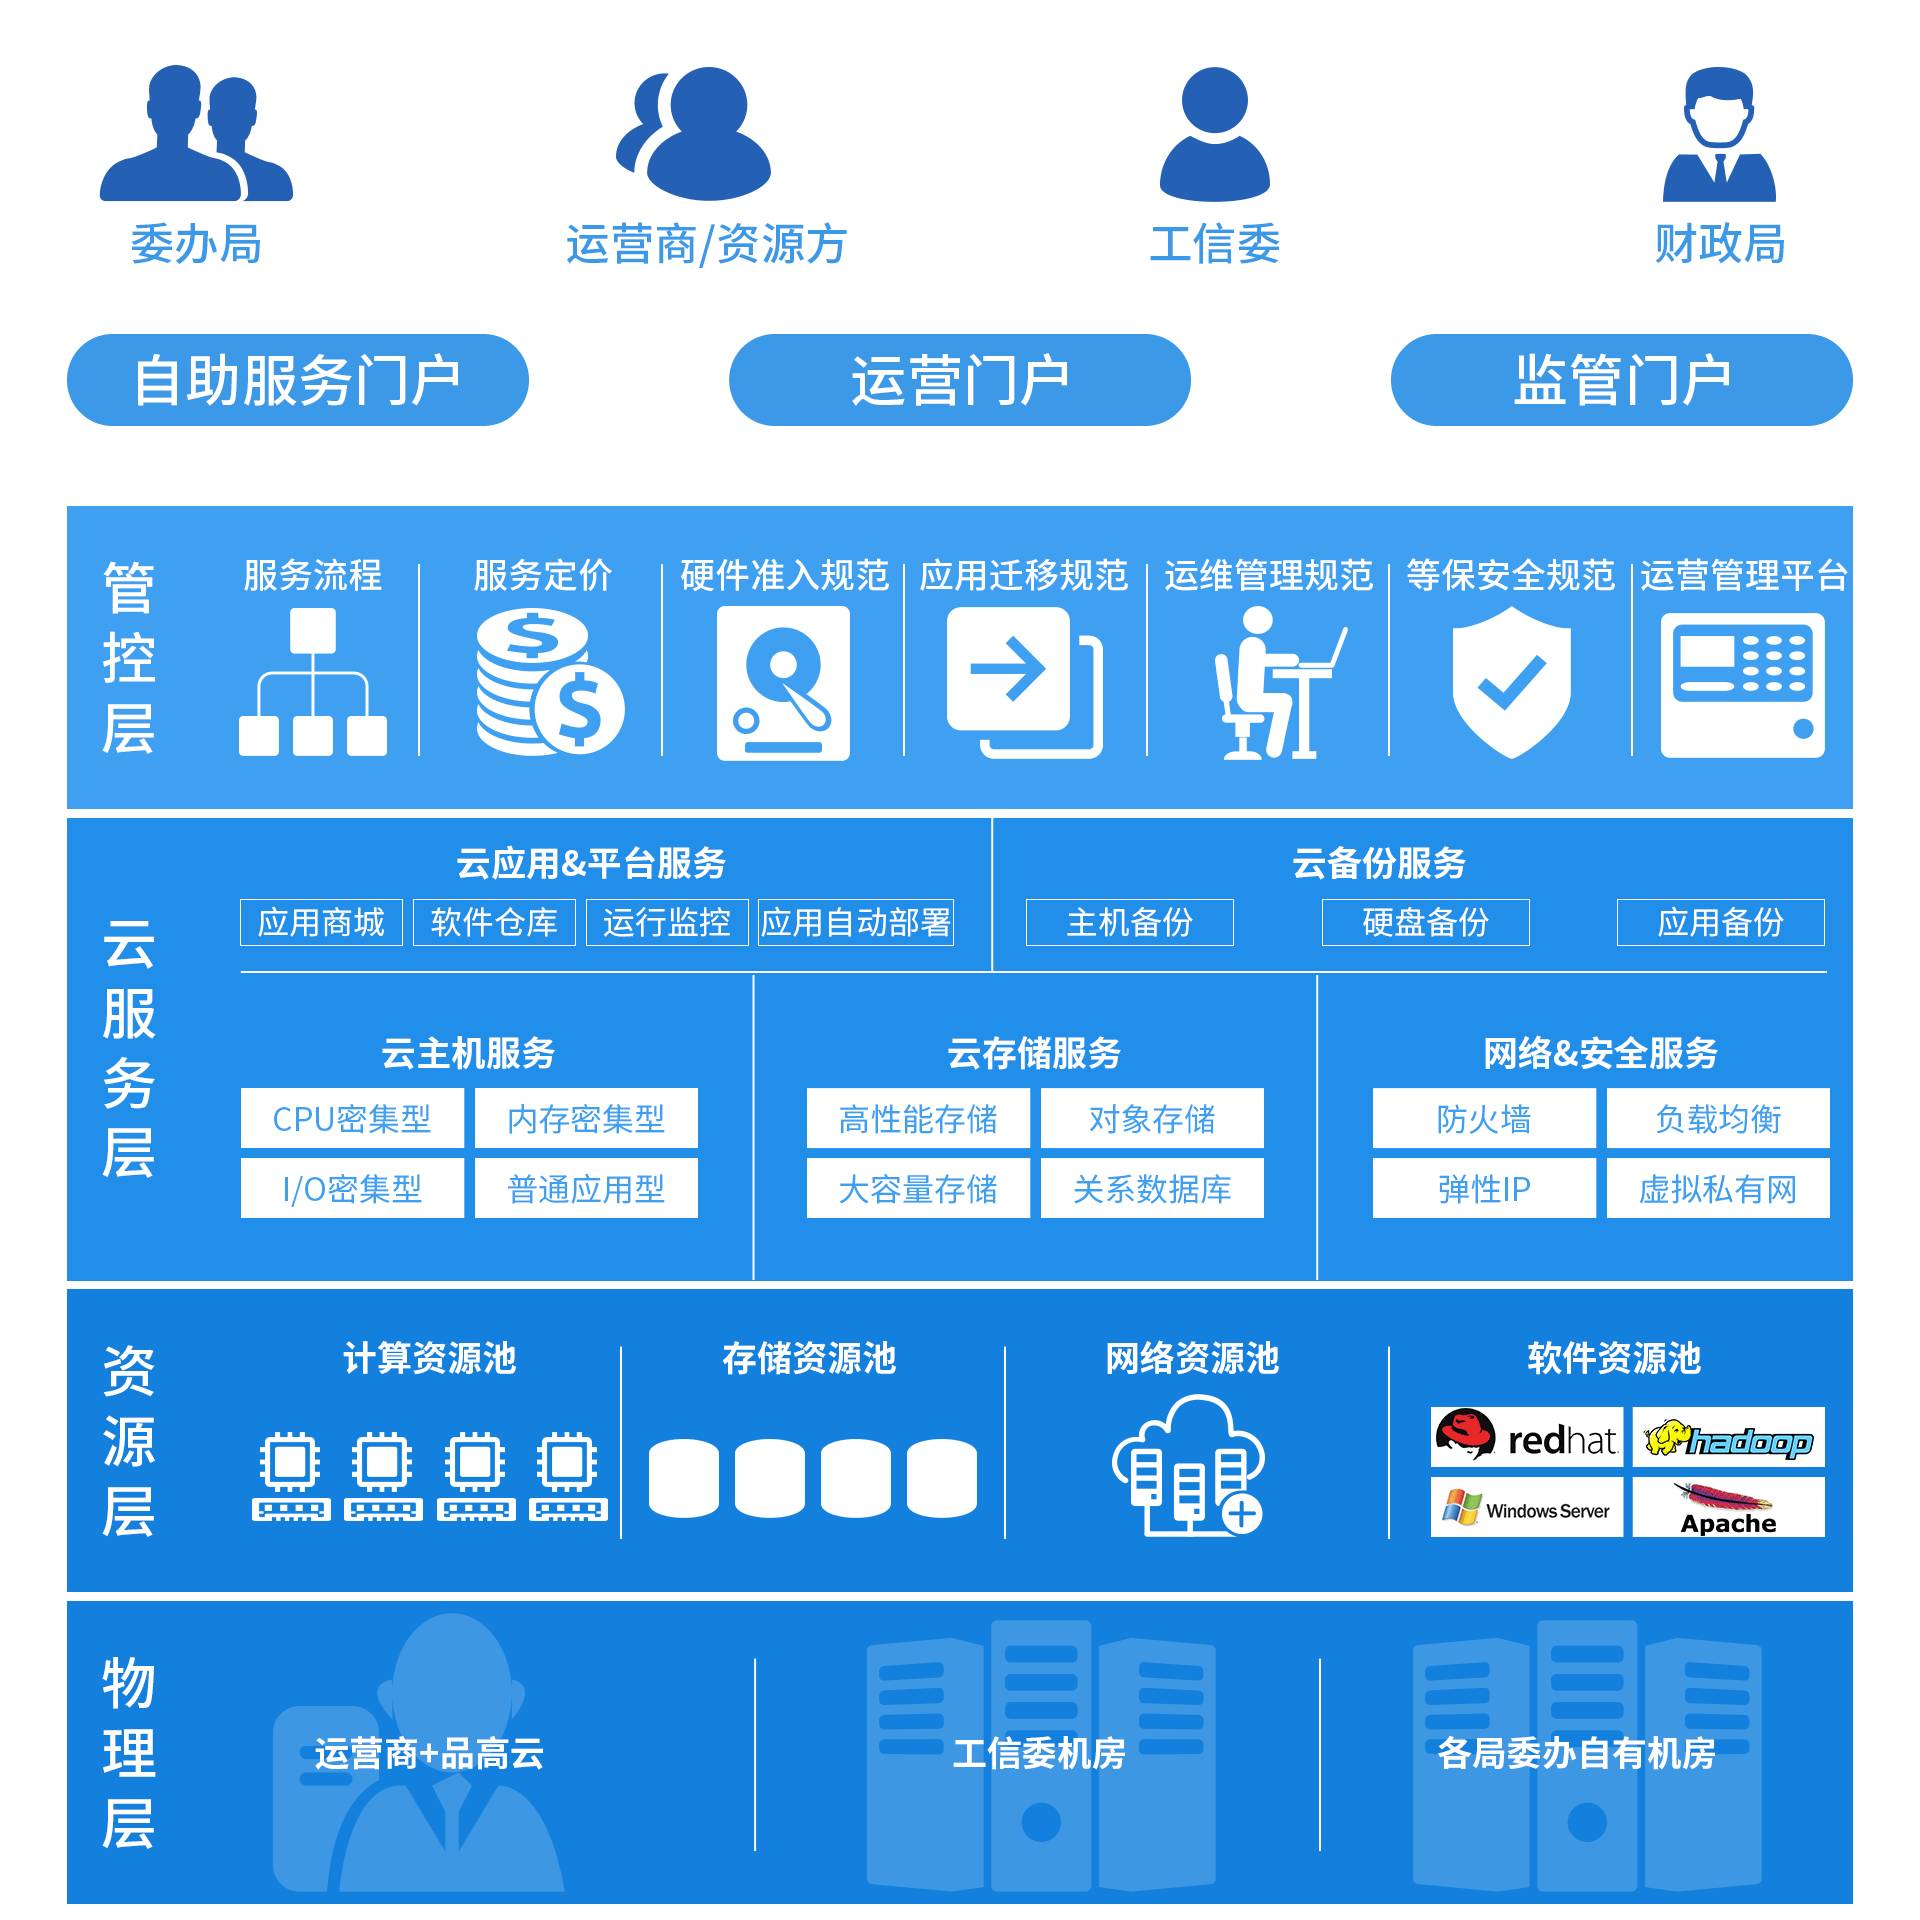 品高云中标广州市政府信息化云服务平台项目